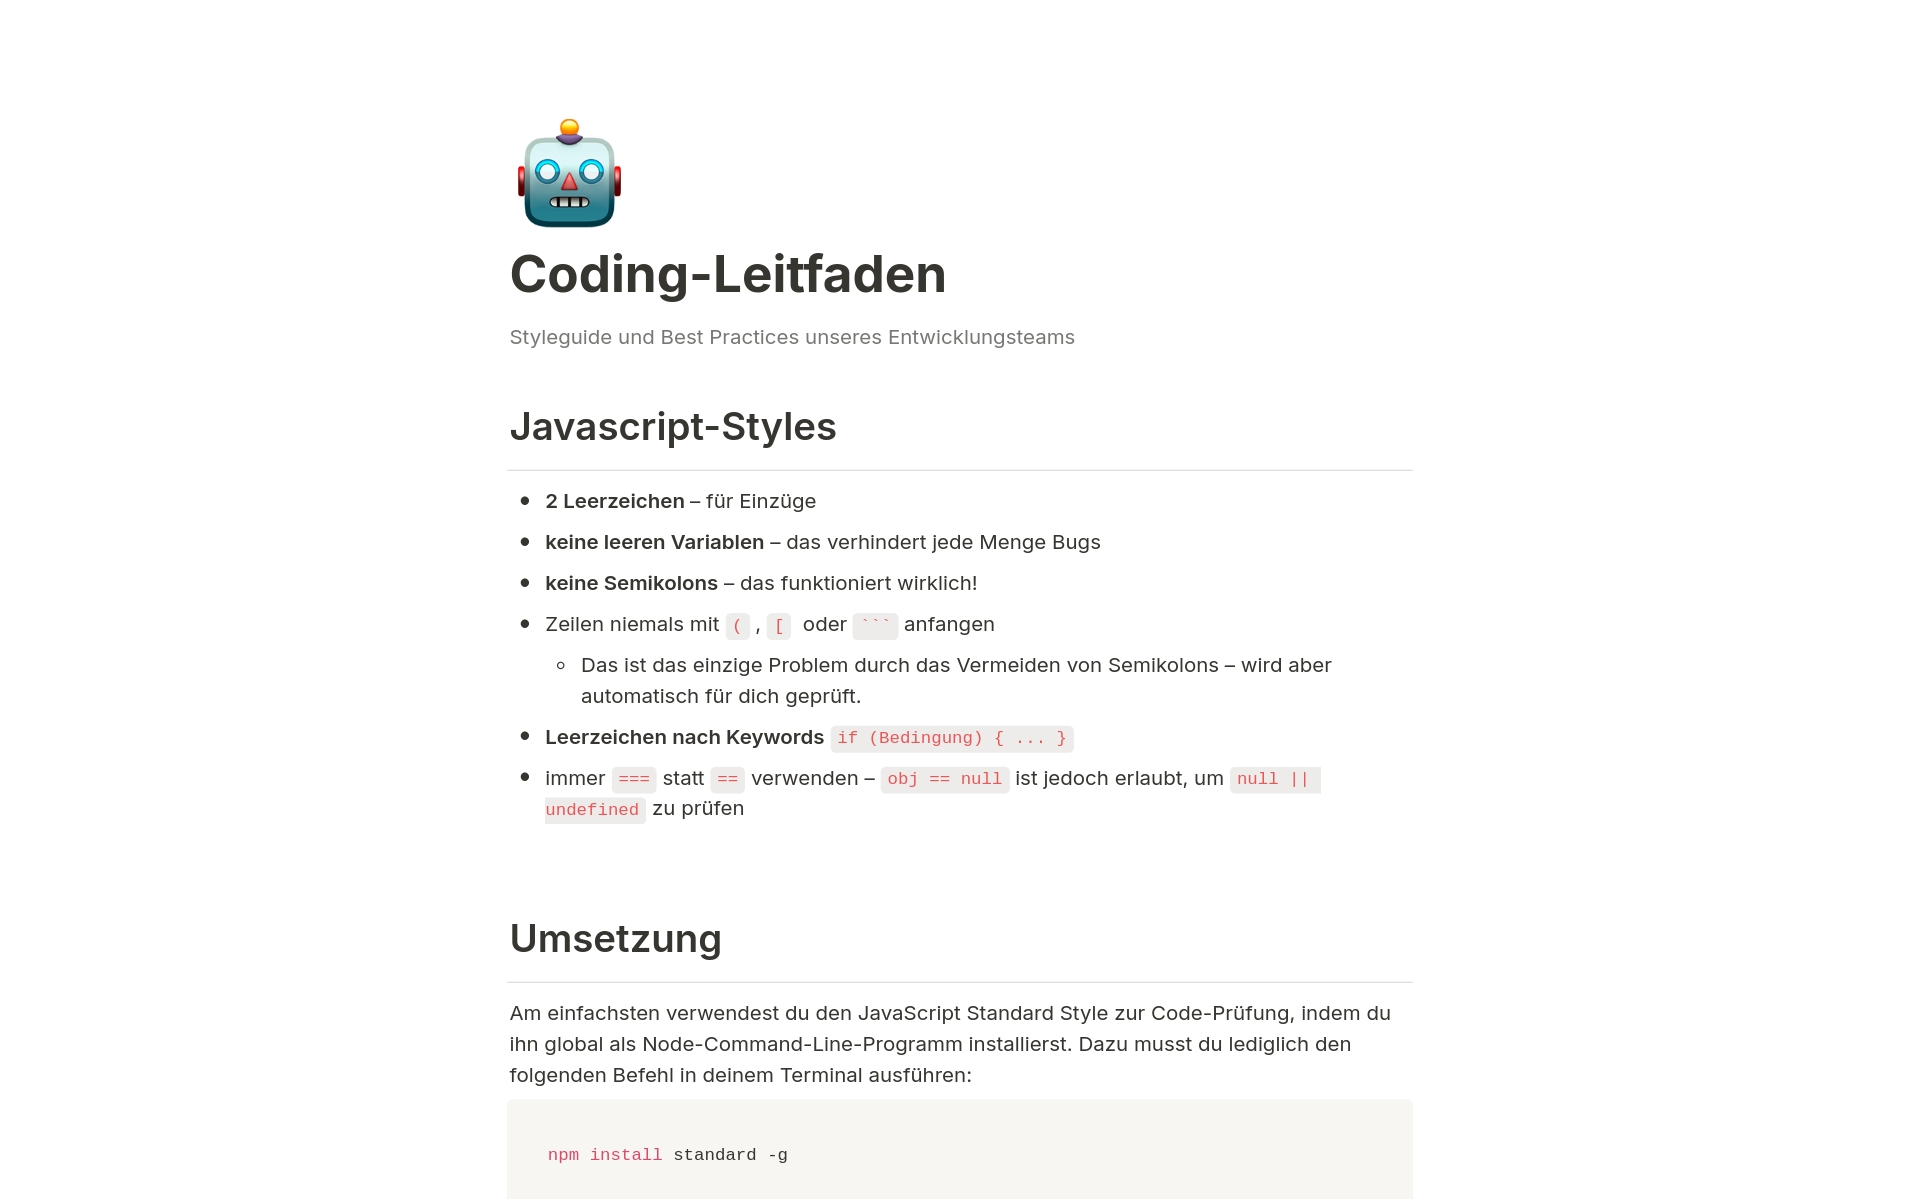 Einem leicht zugänglichen Coding-Leitfaden, der die Codebasis-Regeln simpel darstellt.